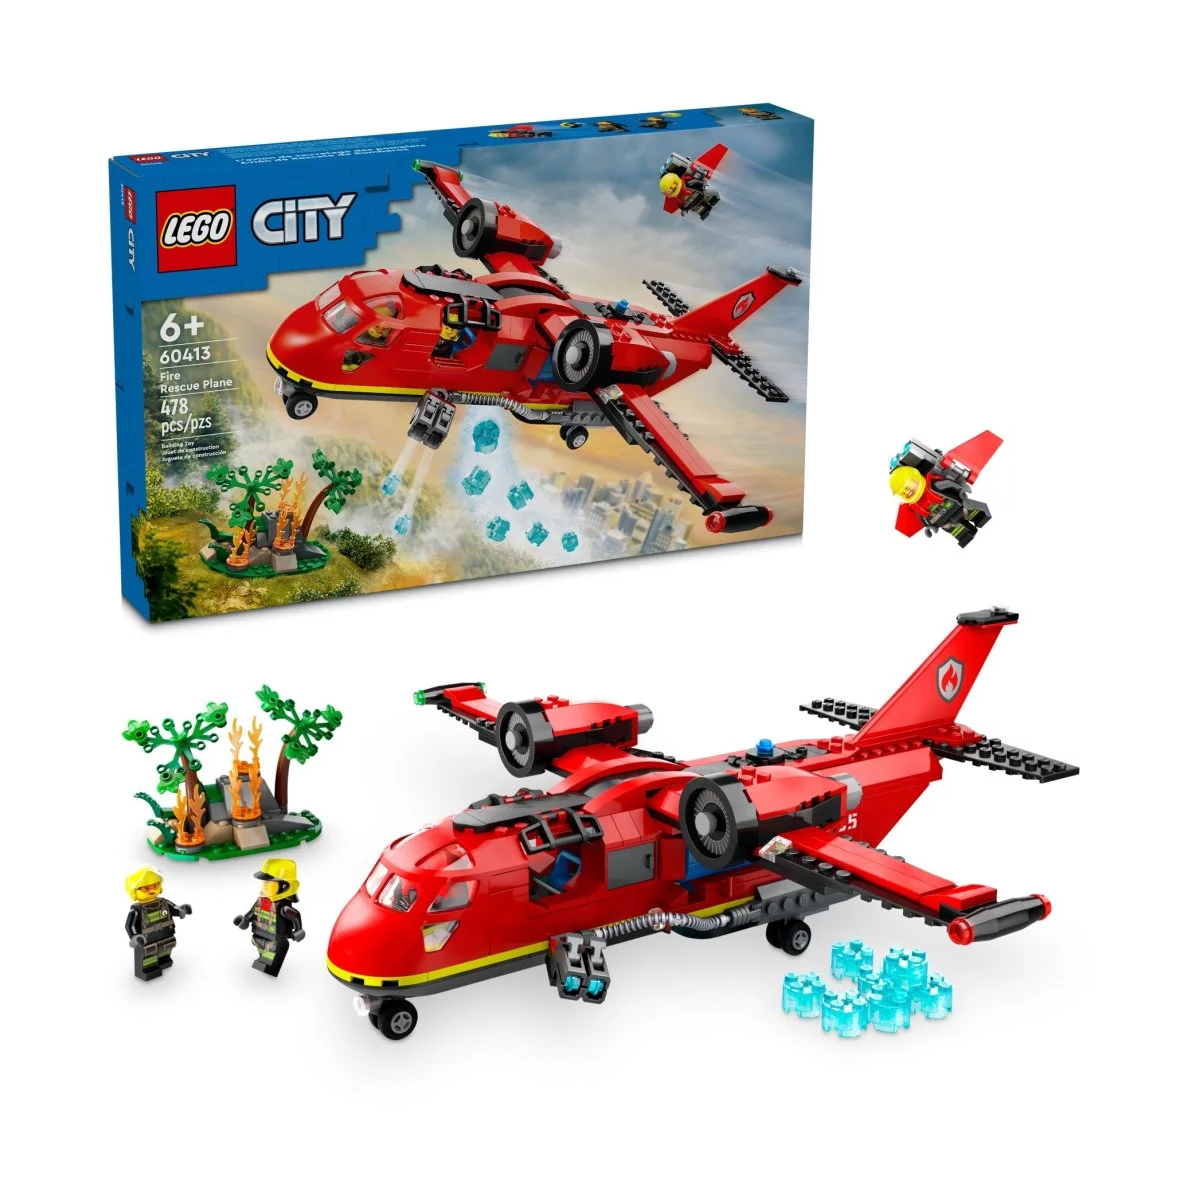 Конструктор Lego City Fire Rescue Plane 60413, 478 деталей конструктор lego city 60248 пожарный спасательный вертолет